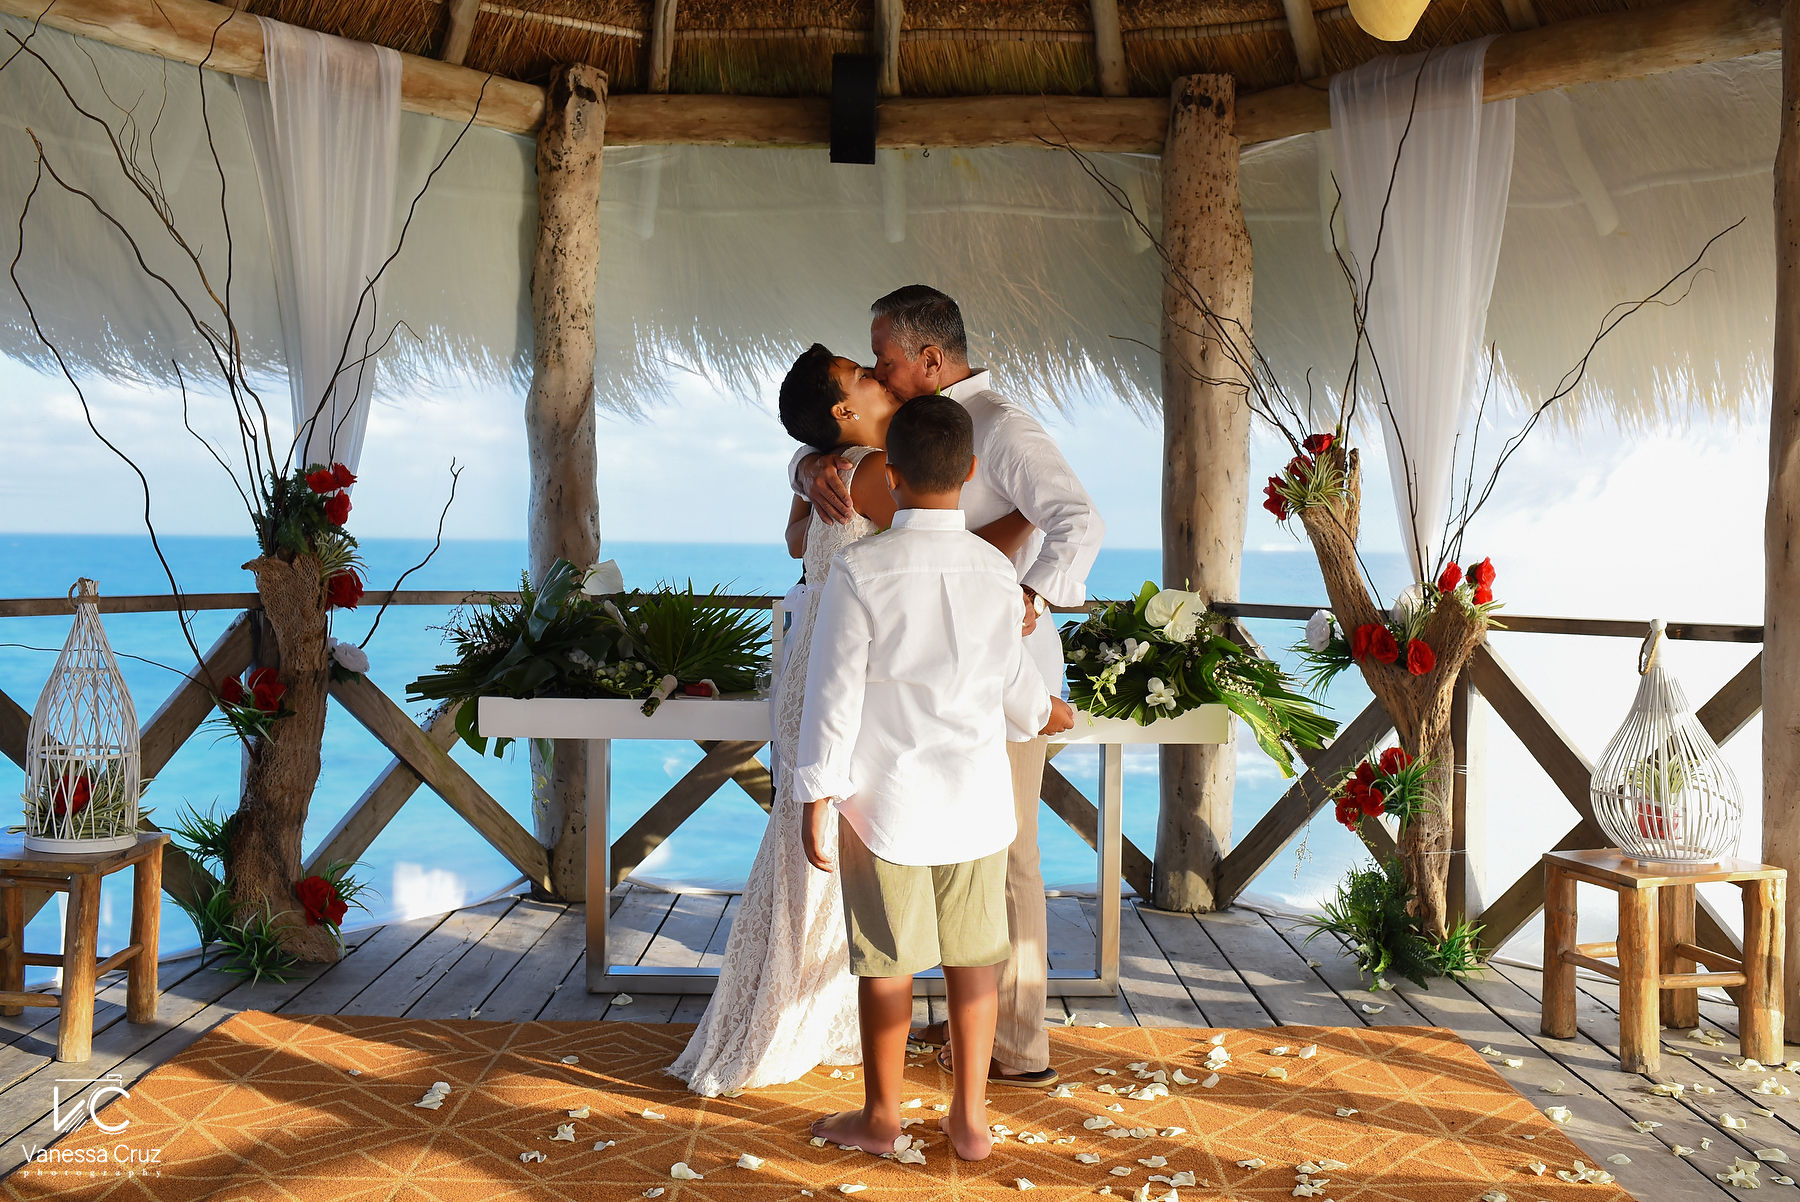 First Kiss Vow Renewal wedding Mayan Palace Riviera Maya Mexico